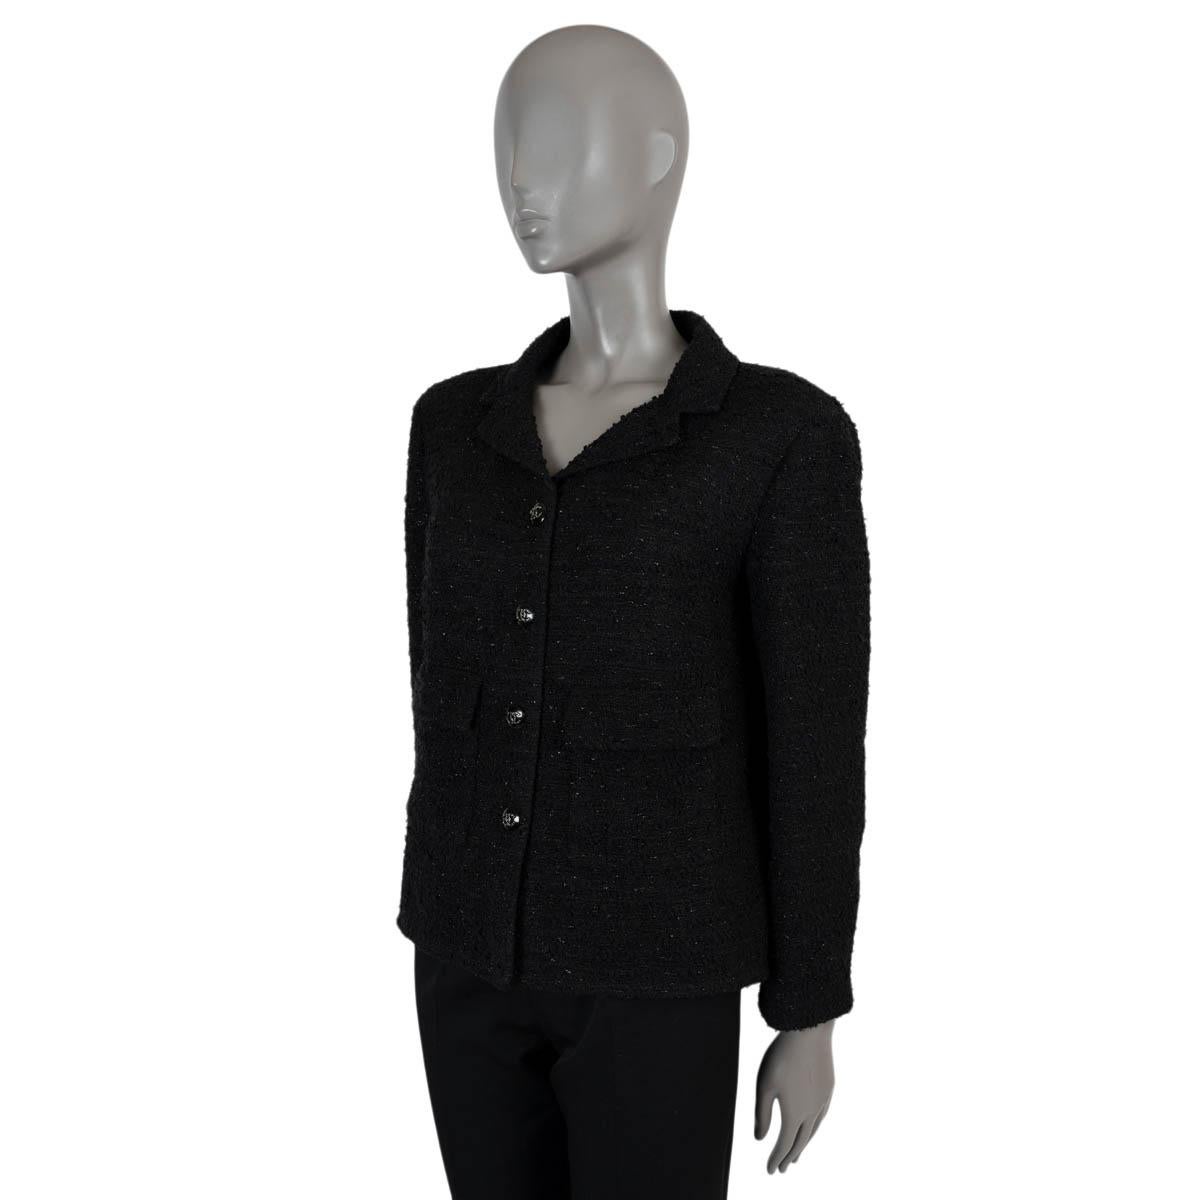 Veste en tweed lurex 100% authentique de Chanel en acrylique (52%), polyester (30%), viscose (9%) et polyamide (9%) noirs. Petite veste noire classique avec revers en pointe et deux poches à rabat à la taille. Il s'ouvre par des boutons CC incrustés